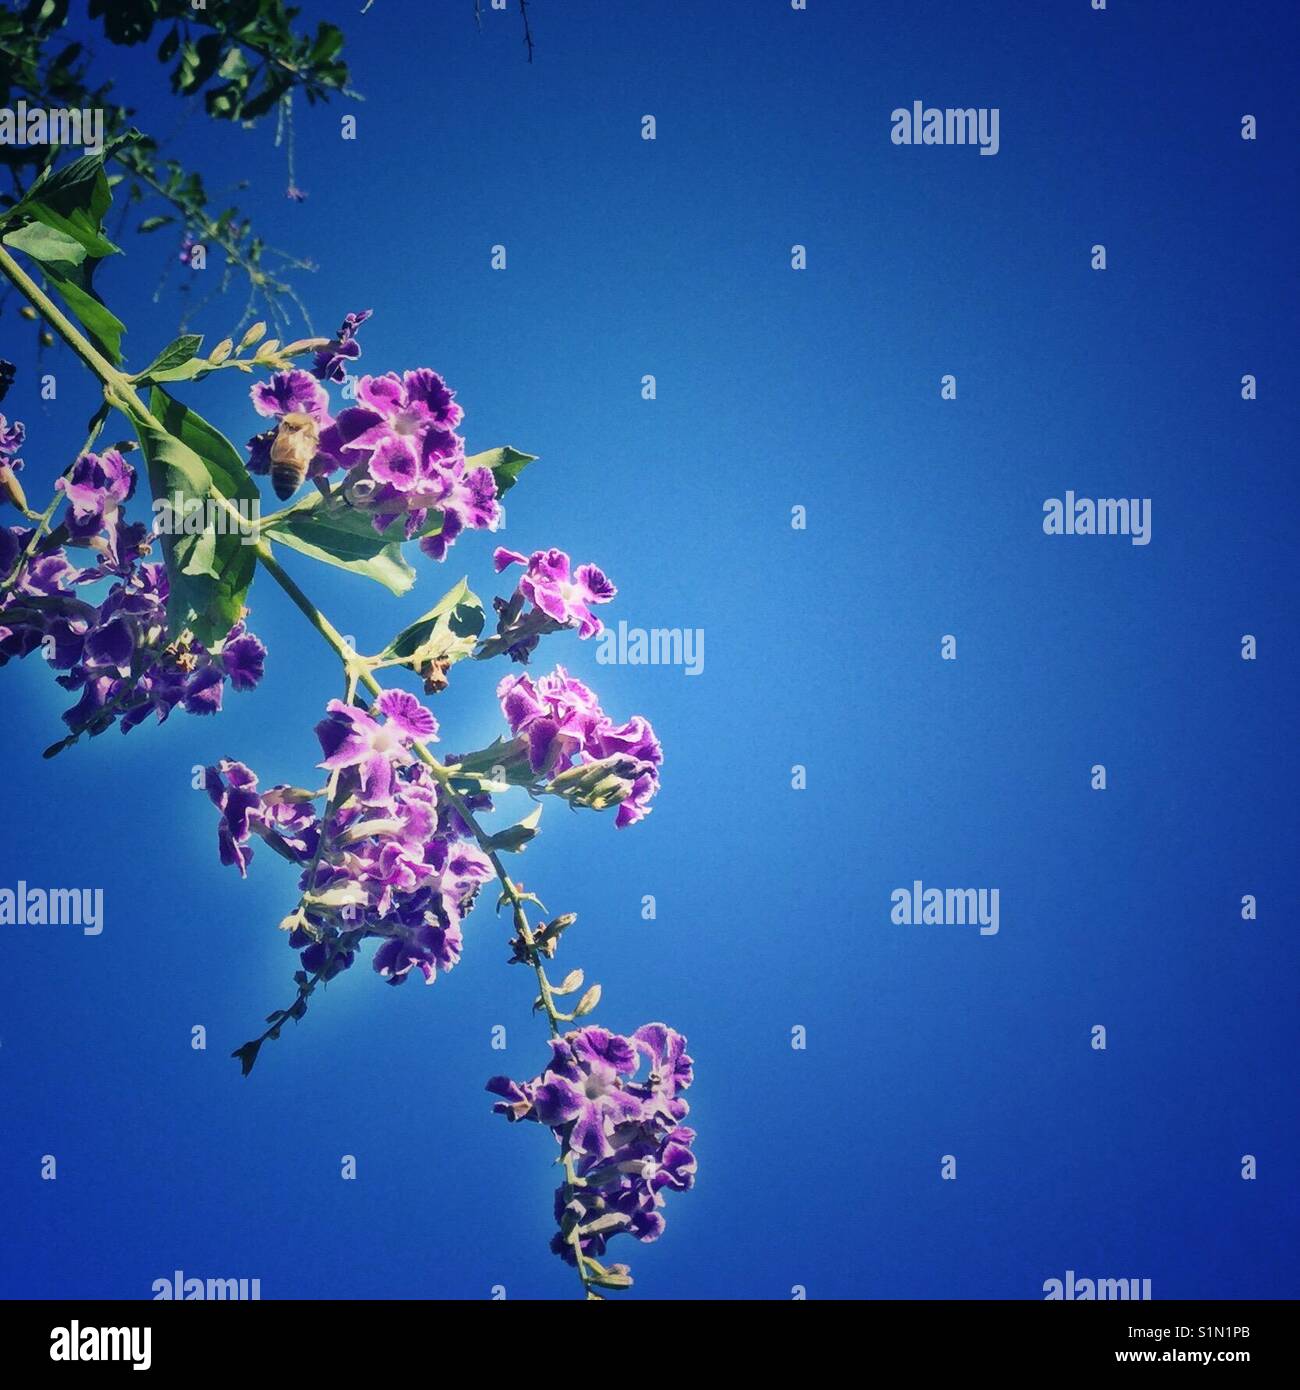 Ciel bleu, fleur pourpre cluster, photo de l'iPhone, la saison du printemps Banque D'Images